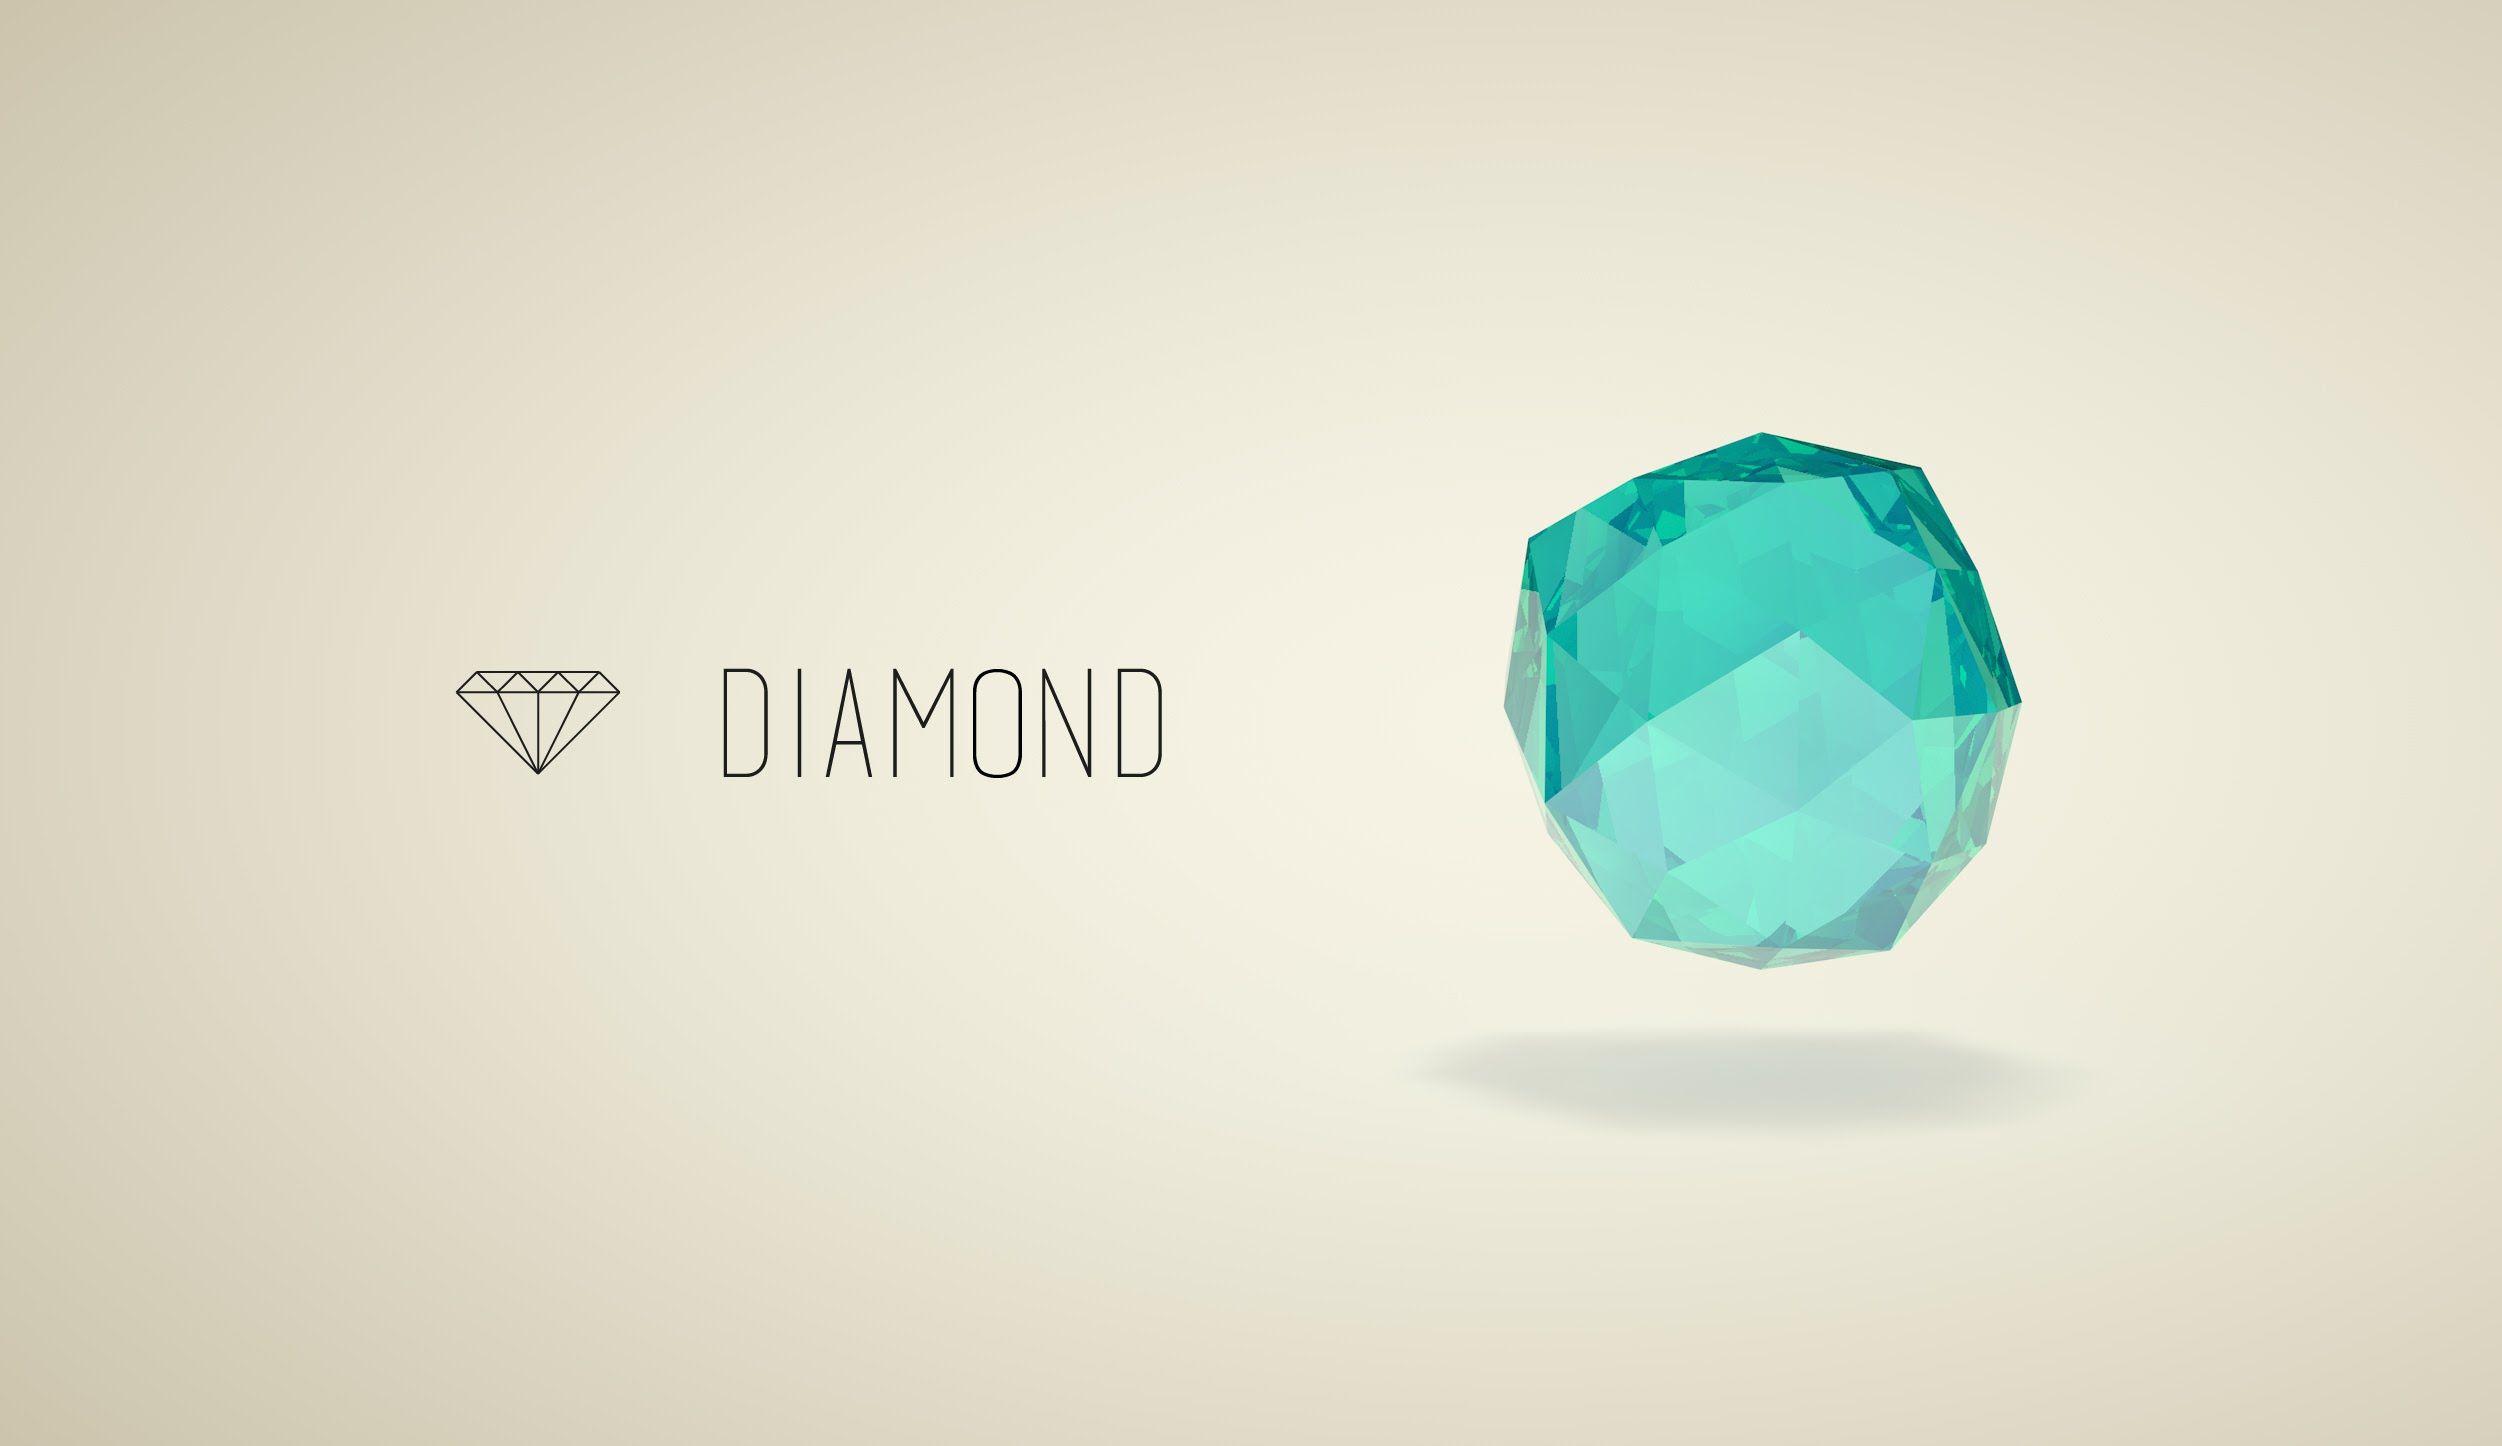 Diamond SpeedArt 4D and Illustrator